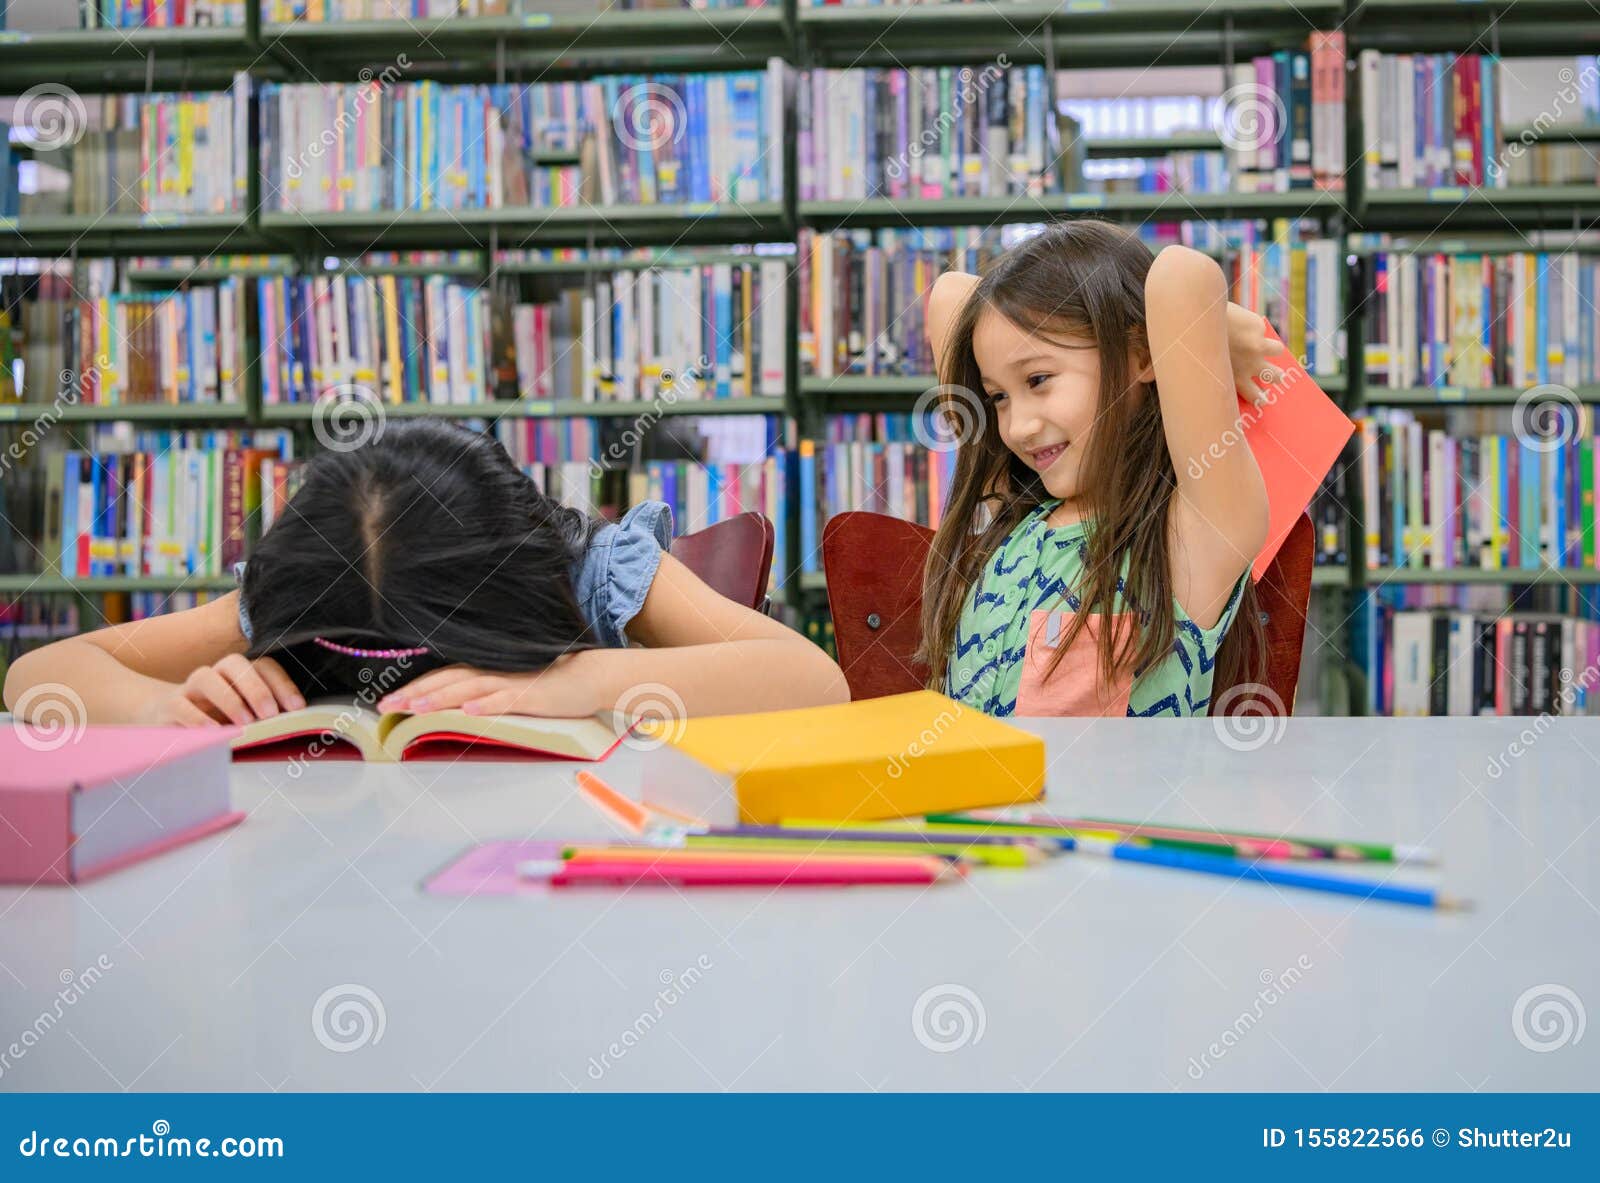 HjÃ¤rtliga flickor som lÃ¤ser bok och leker med att slÃ¥ en sovande vÃ¤n i skolbiblioteket. MÃ¤nniskors livsstil och utbildning och vÃ¤nskap. Fritidsaktiviteter fÃ¶r barn- och barngrupp